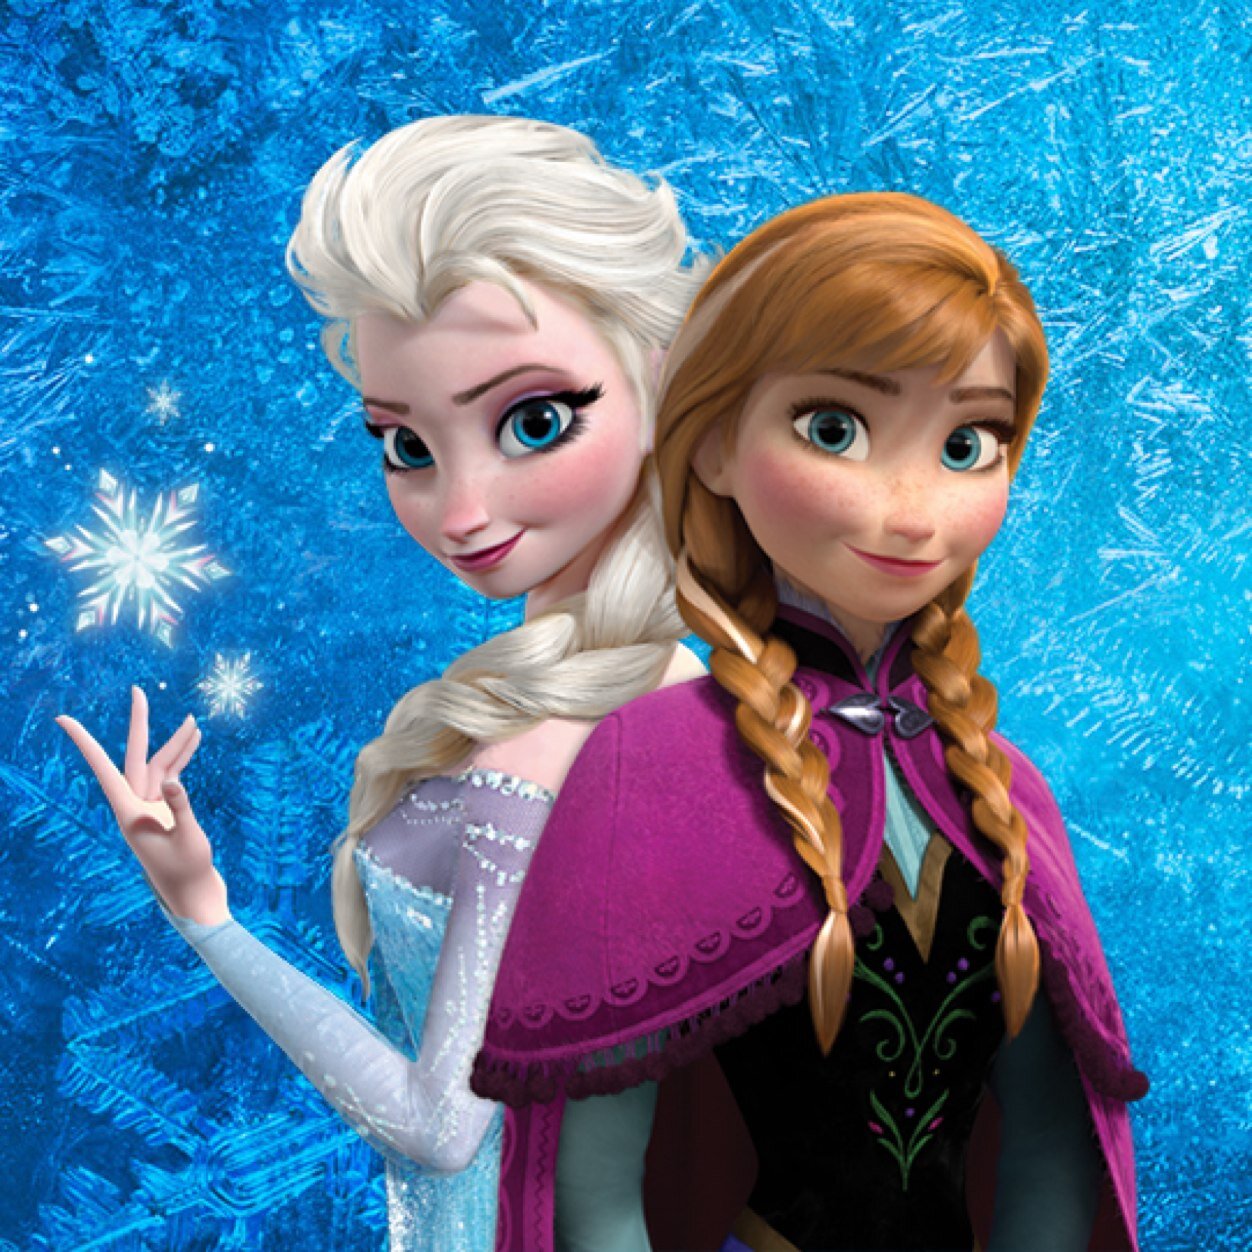 ｃｉａ こちら映画中央情報局です Frozen Fever アナと雪 の女王のその後を描いたショート アニメ フローズン フィーバー と 古典アニメを実写化したディズニー ファンタジーの最新作 シンデレラ の同時上映が決定